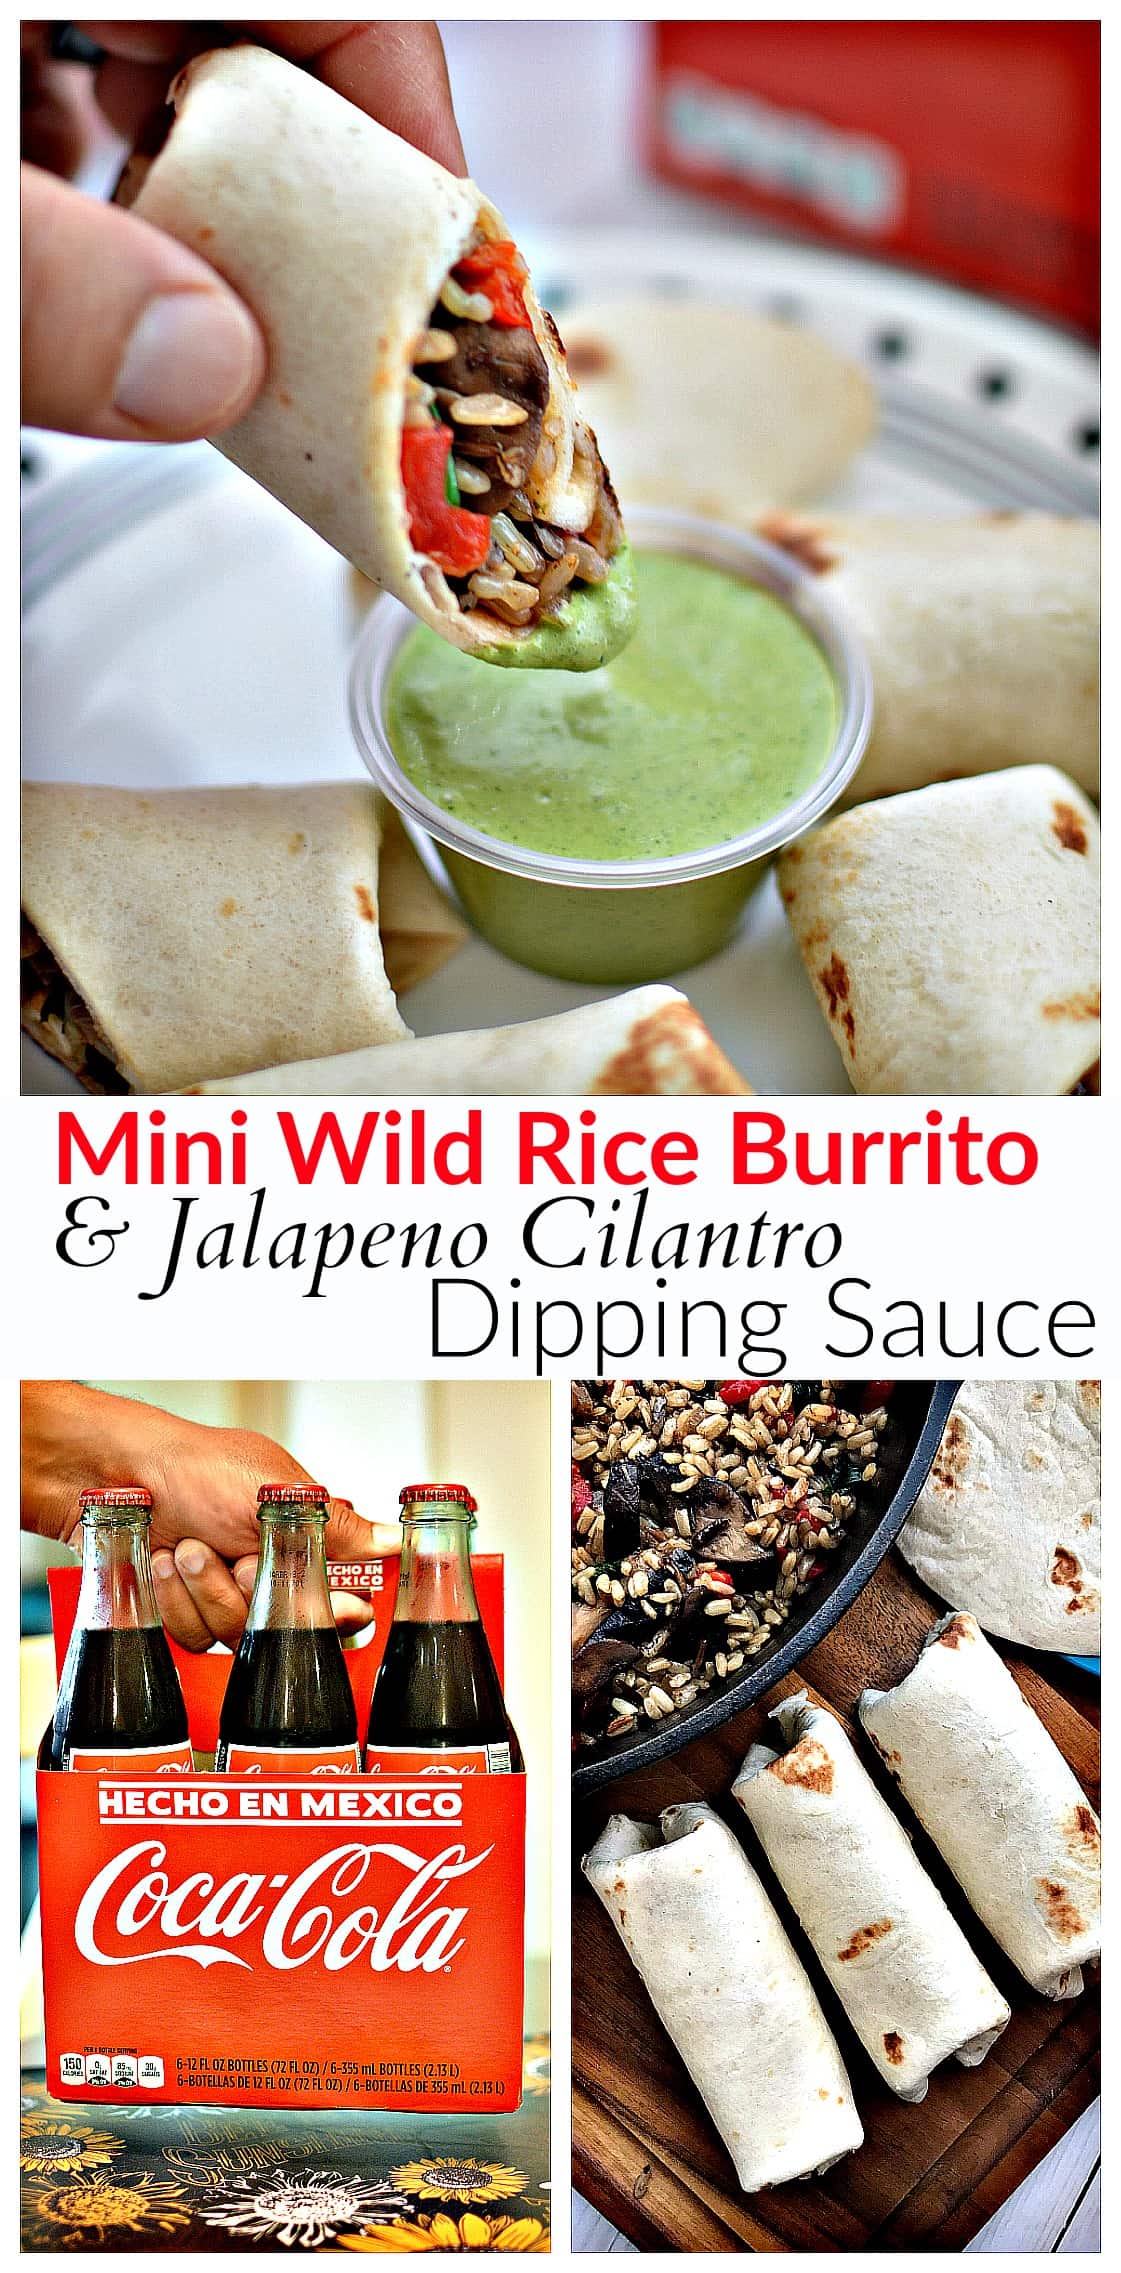 Mini Mushroom & Wild Rice Burrito + Jalapeño Cilantro Dipping Sauce